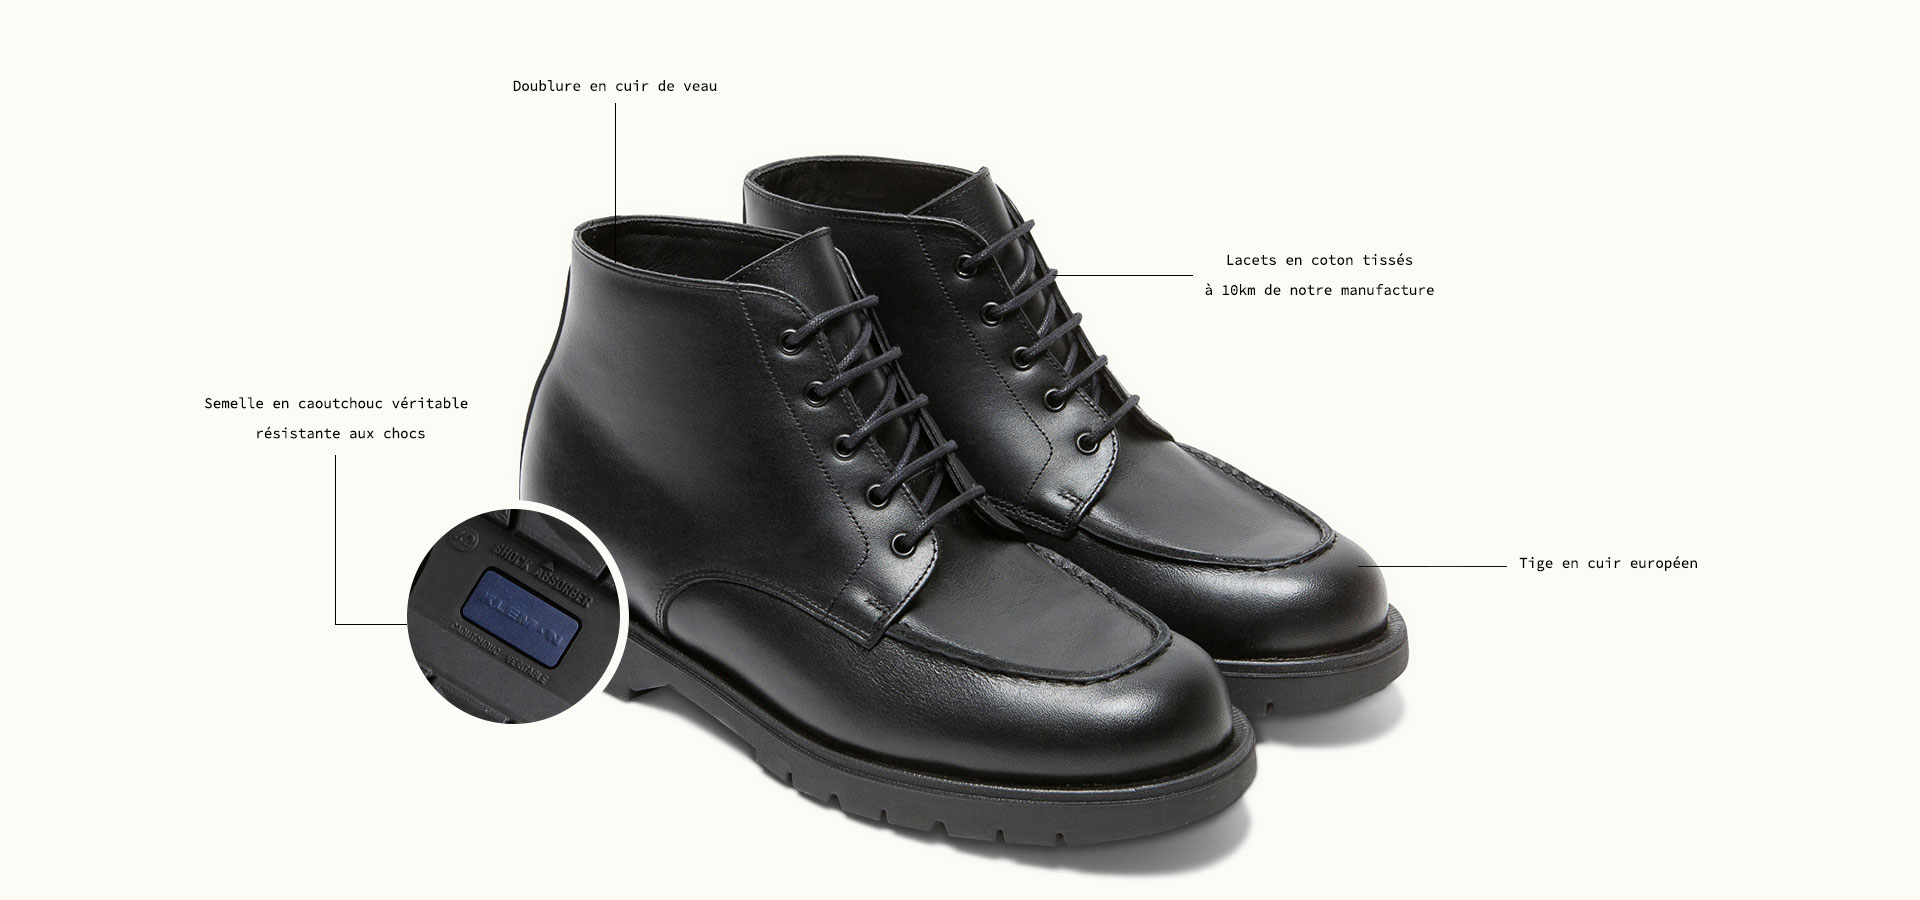 Boots crantées noires OXAL KP 